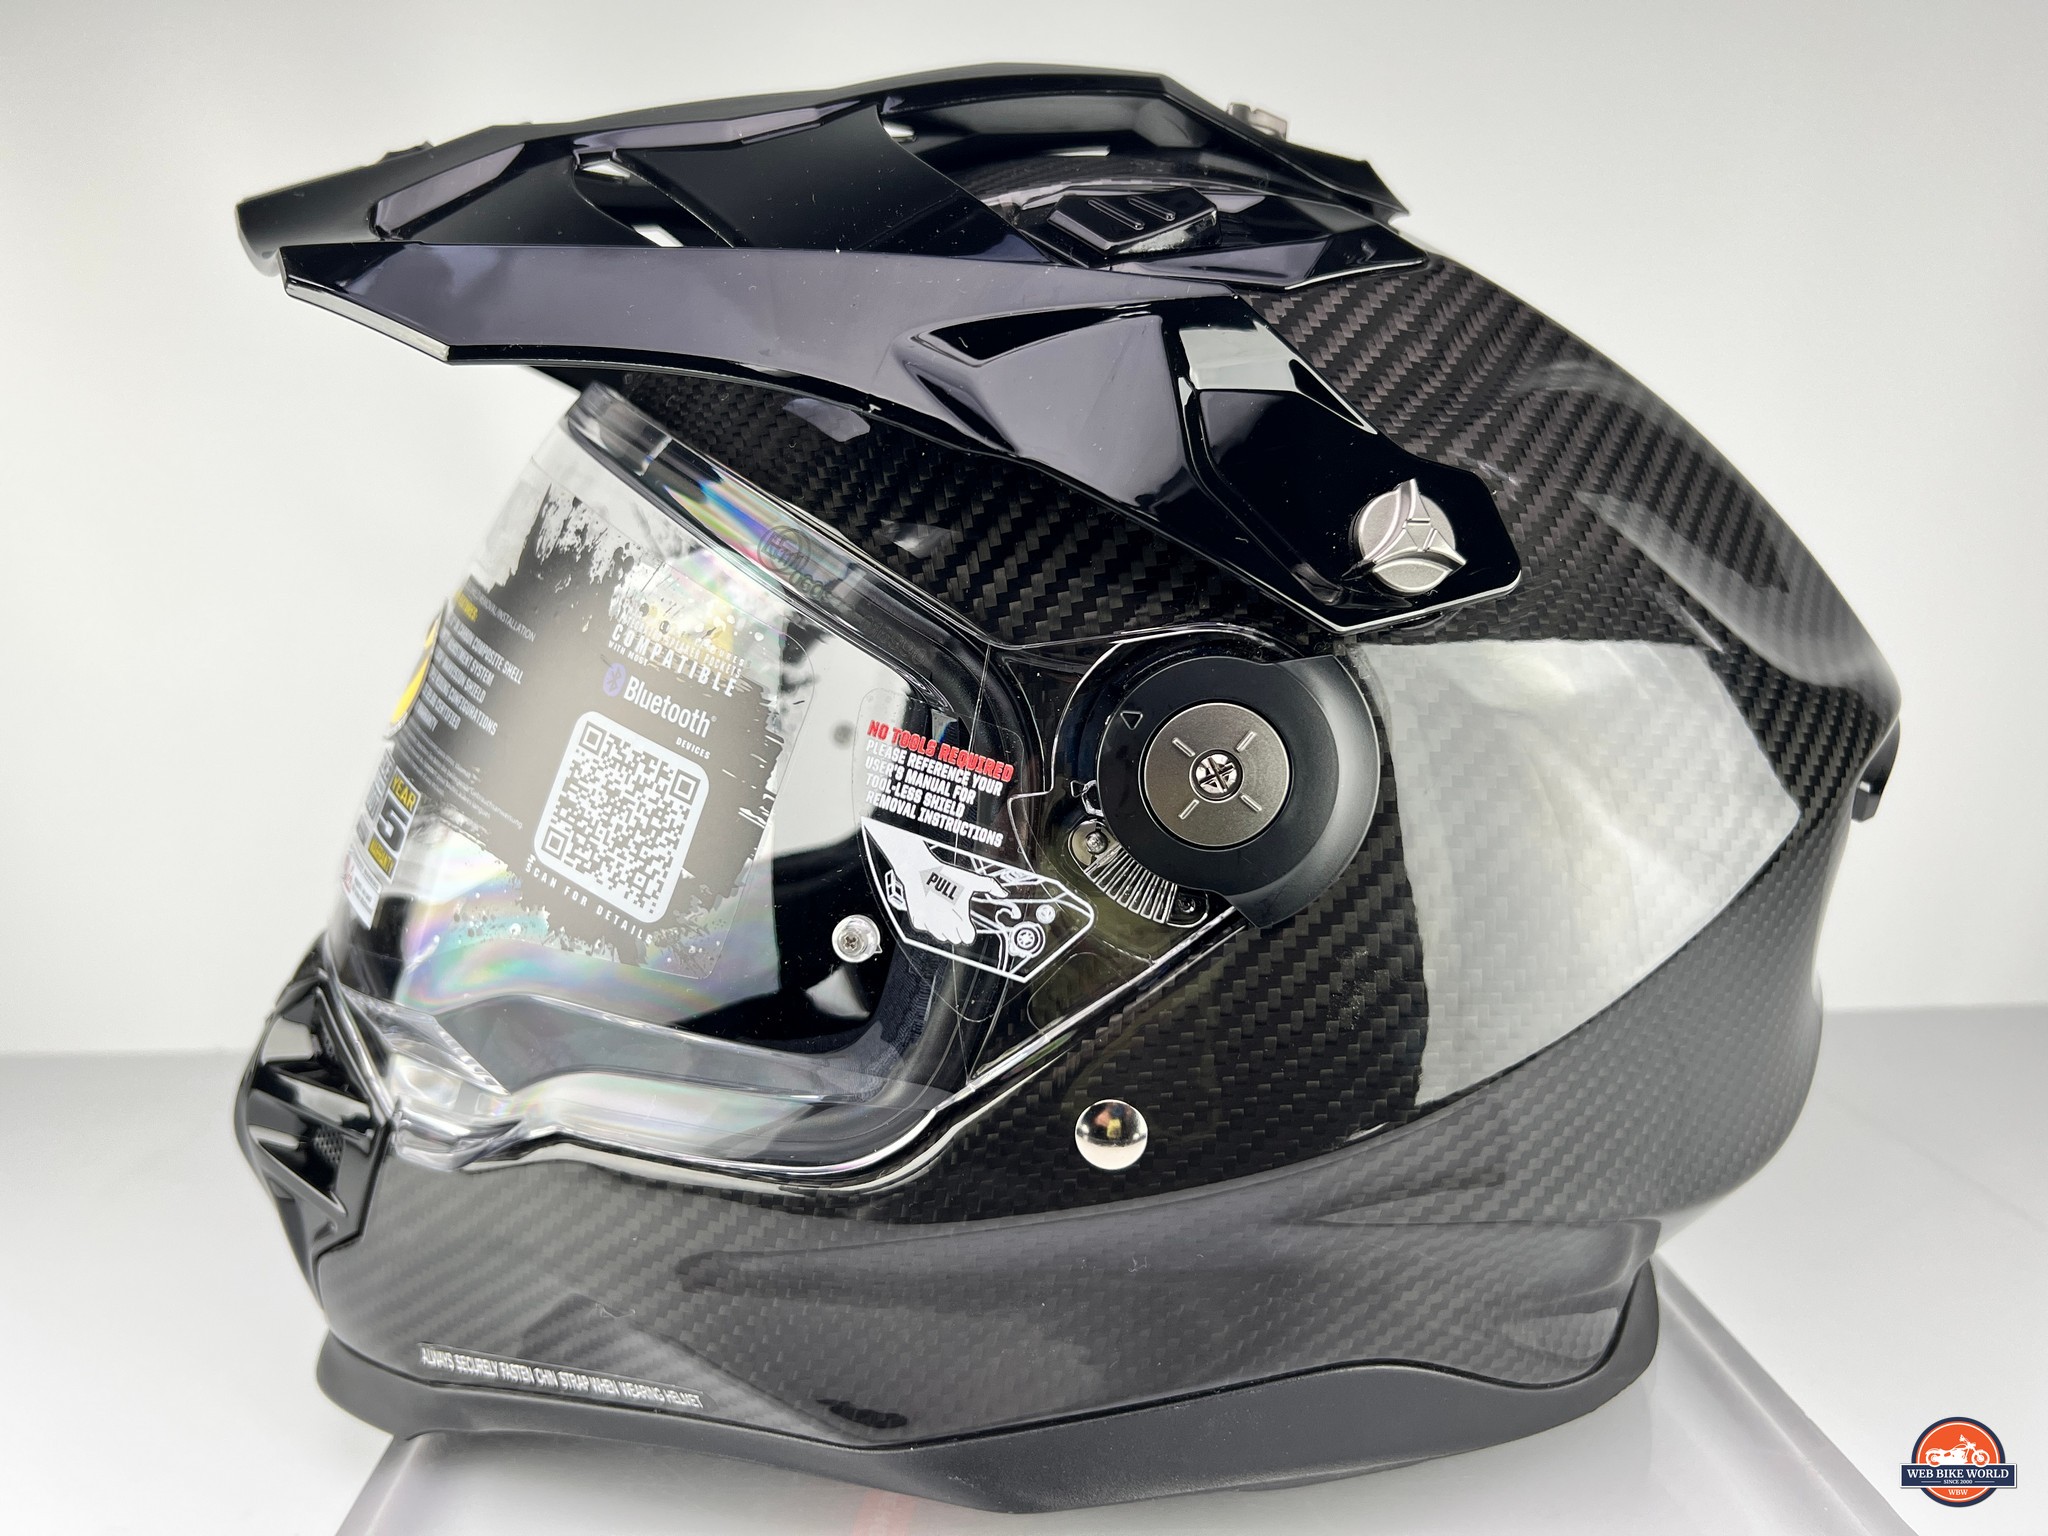 The Scorpion EXO-XT9000 adventure helmet